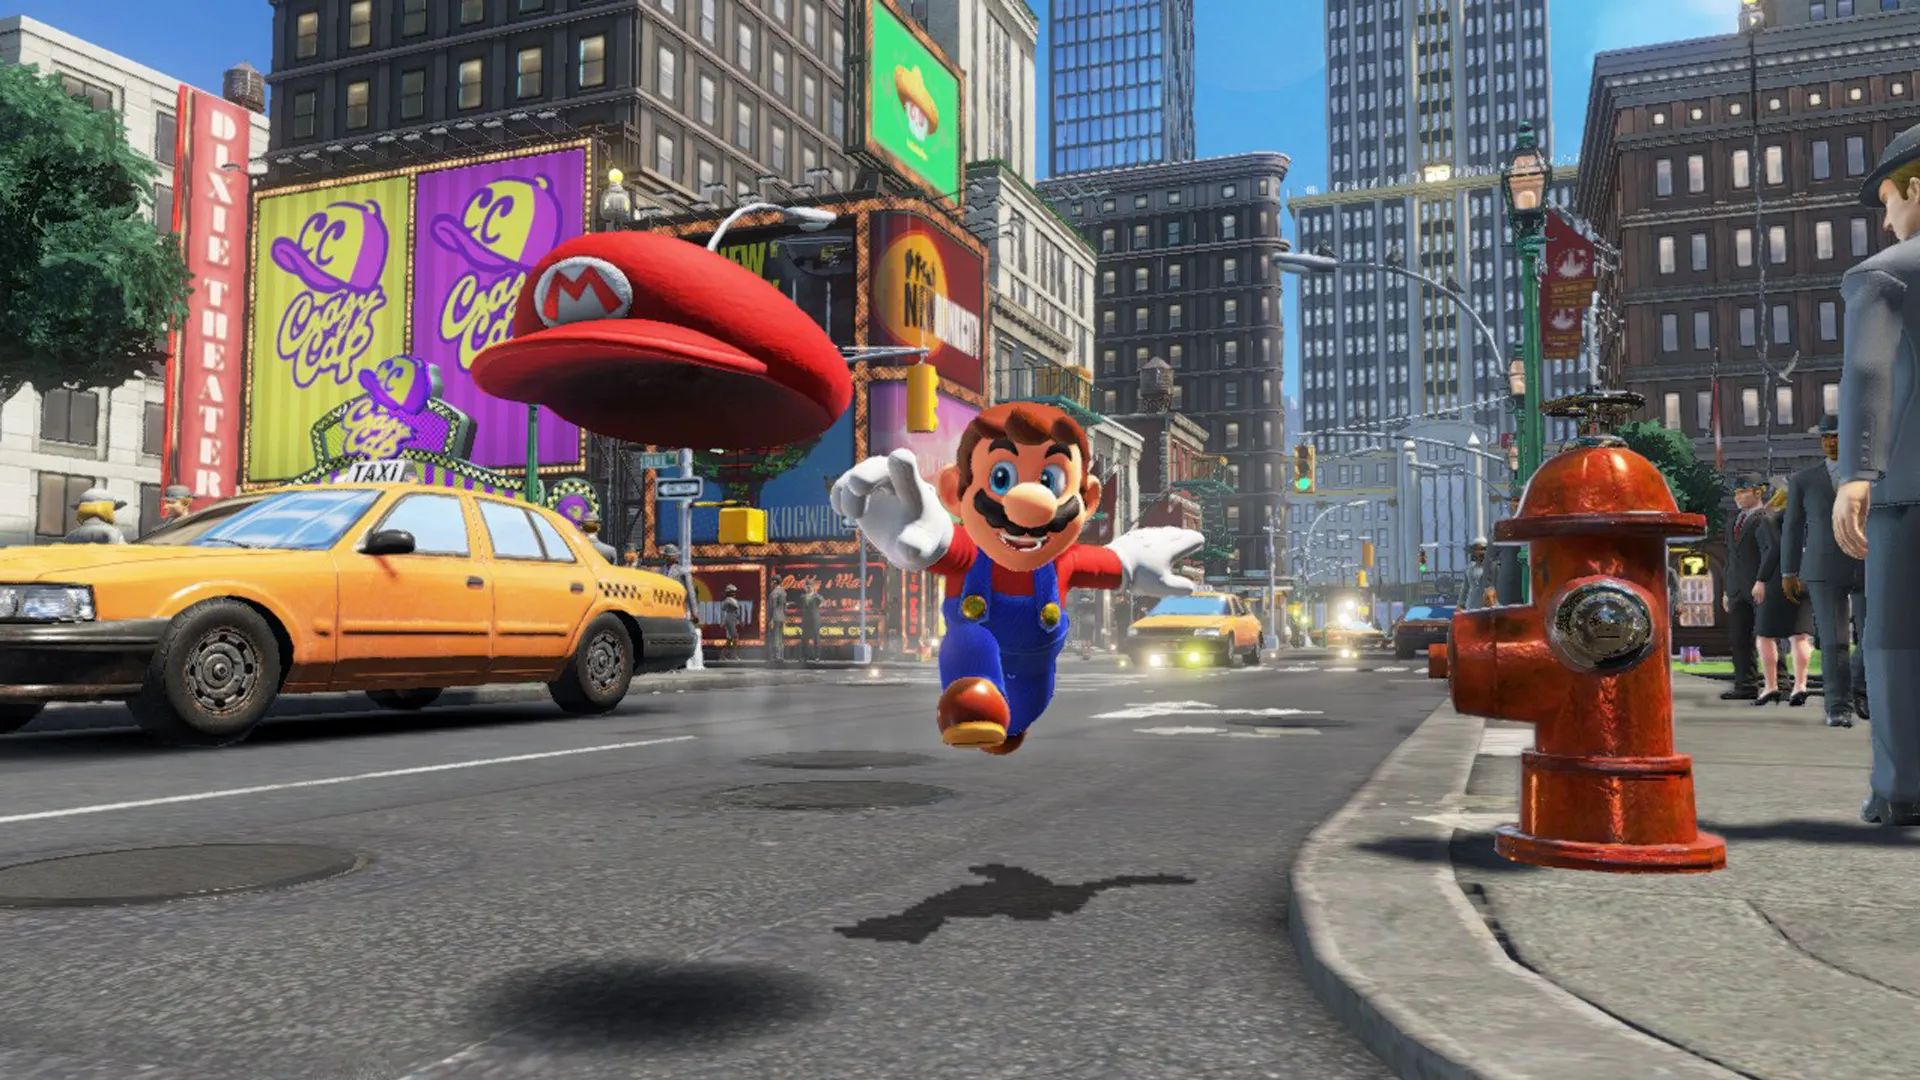 Futuro da franquia Mario não será nos celulares, garante Miyamoto